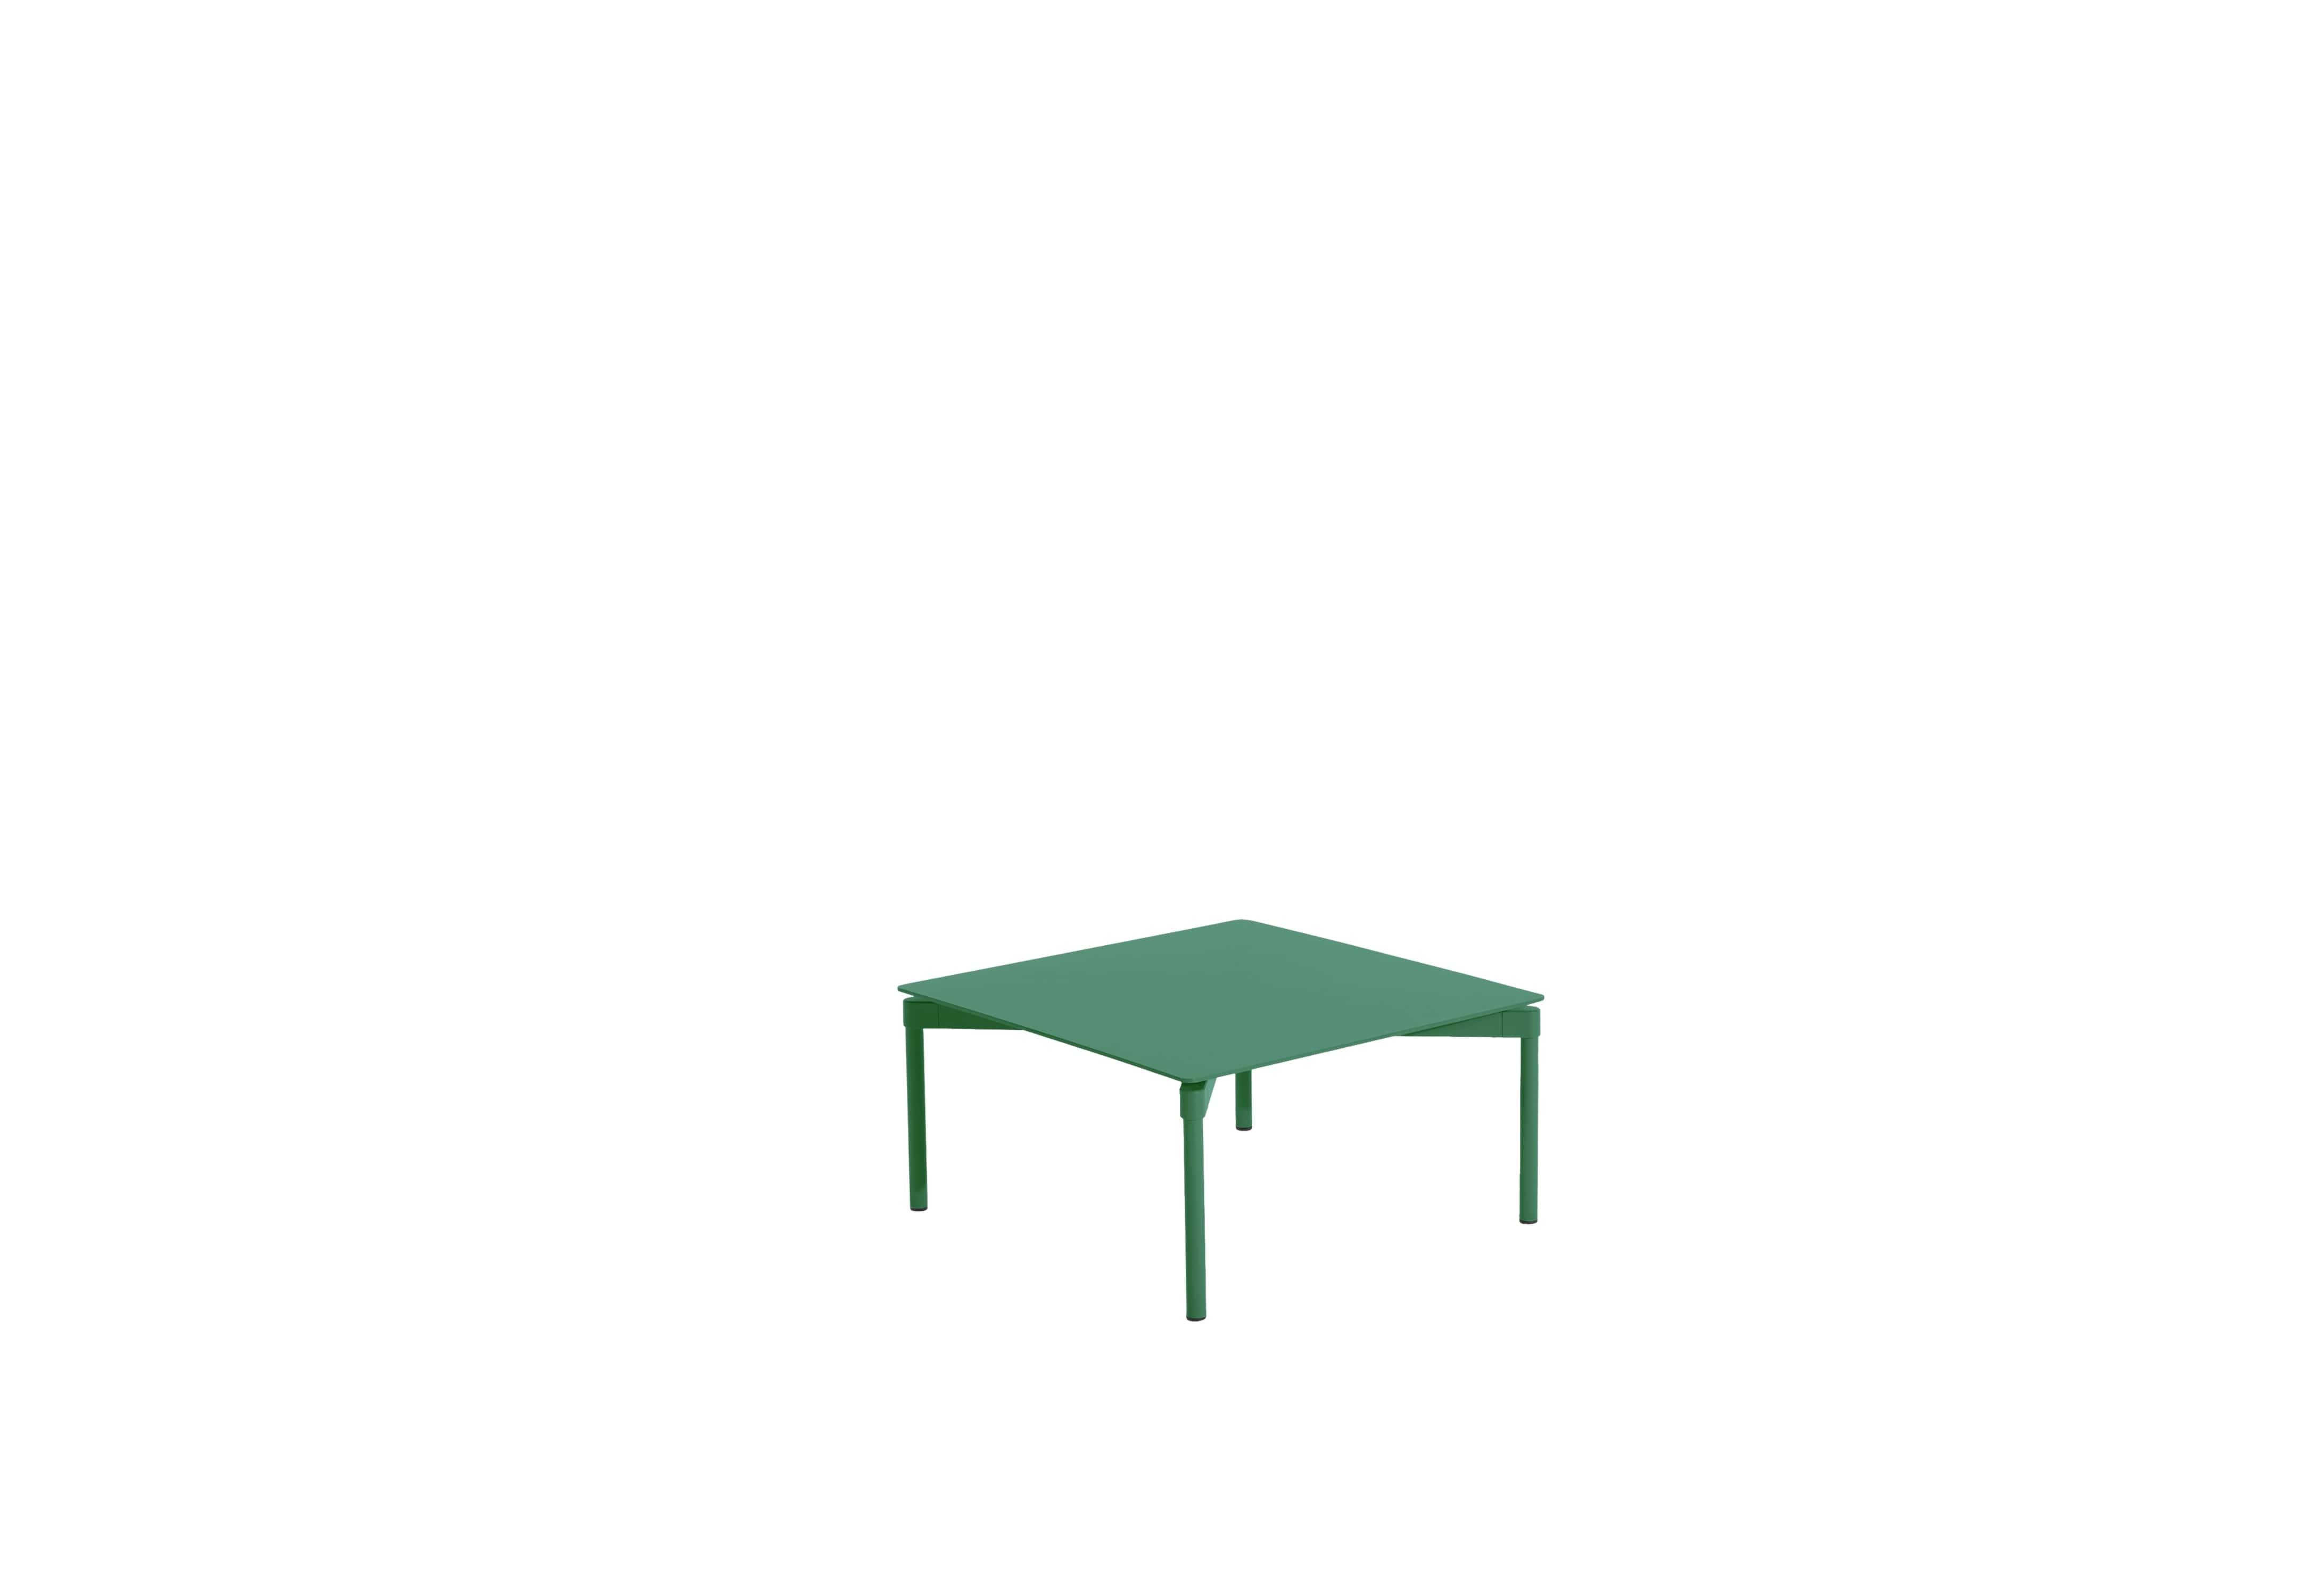 Petite Friture Fromme Couchtisch aus mint-grünem Aluminium von Tom Chung, 2020

Die Fromme Collection zeichnet sich durch ihre klare Linie und ihr kompaktes Design aus. Unter den Sitzen angebrachte Dämpfer verleihen den Sitzen eine weiche und sehr